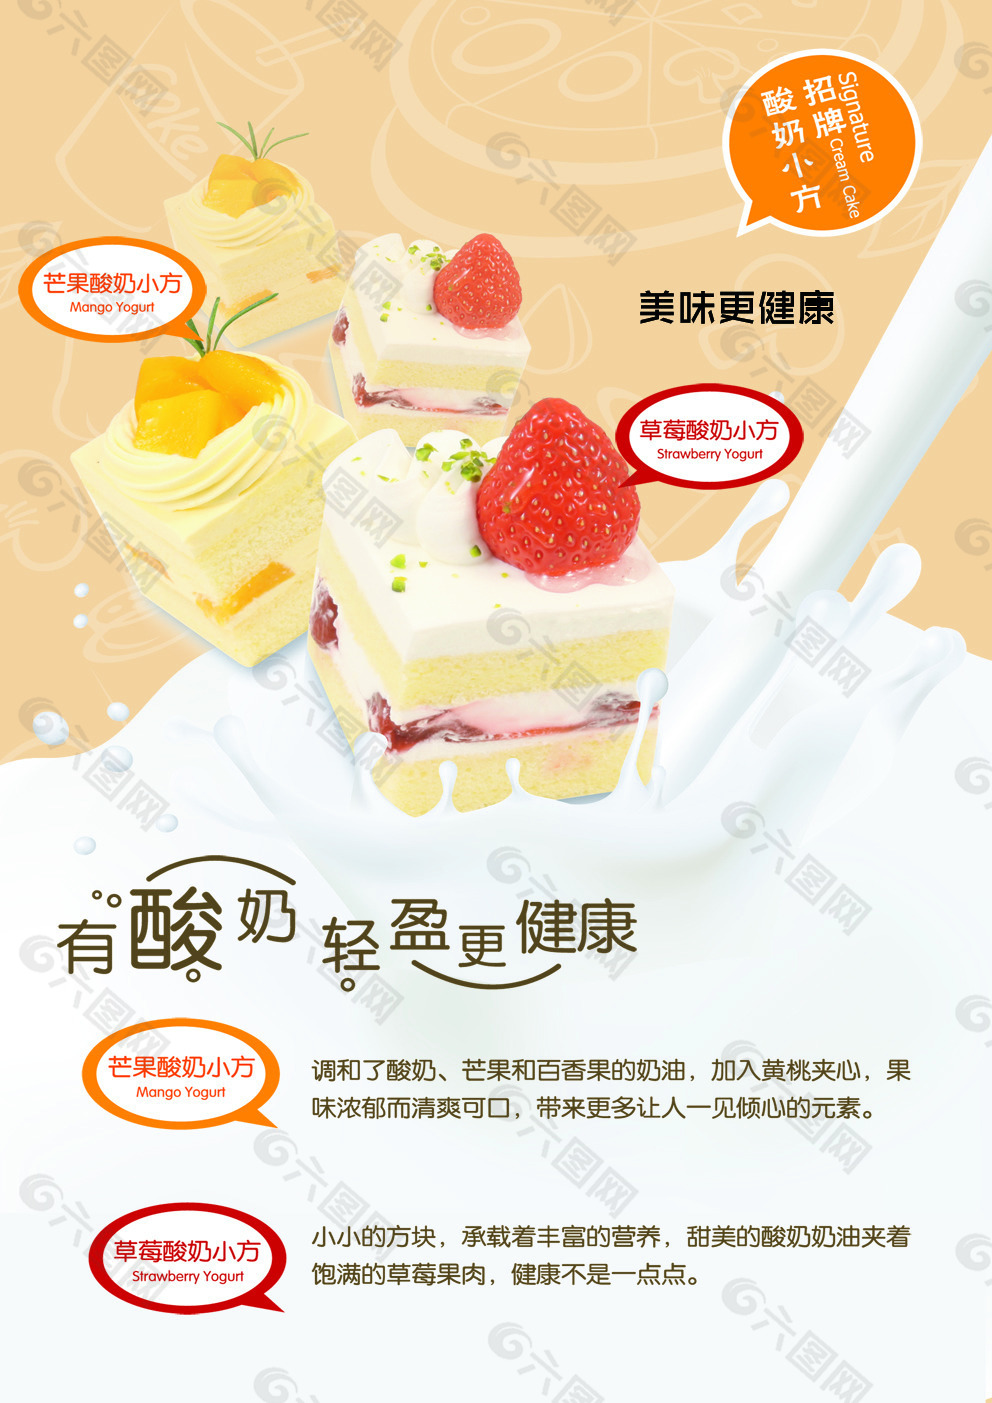 原创酸奶蛋糕海报设计